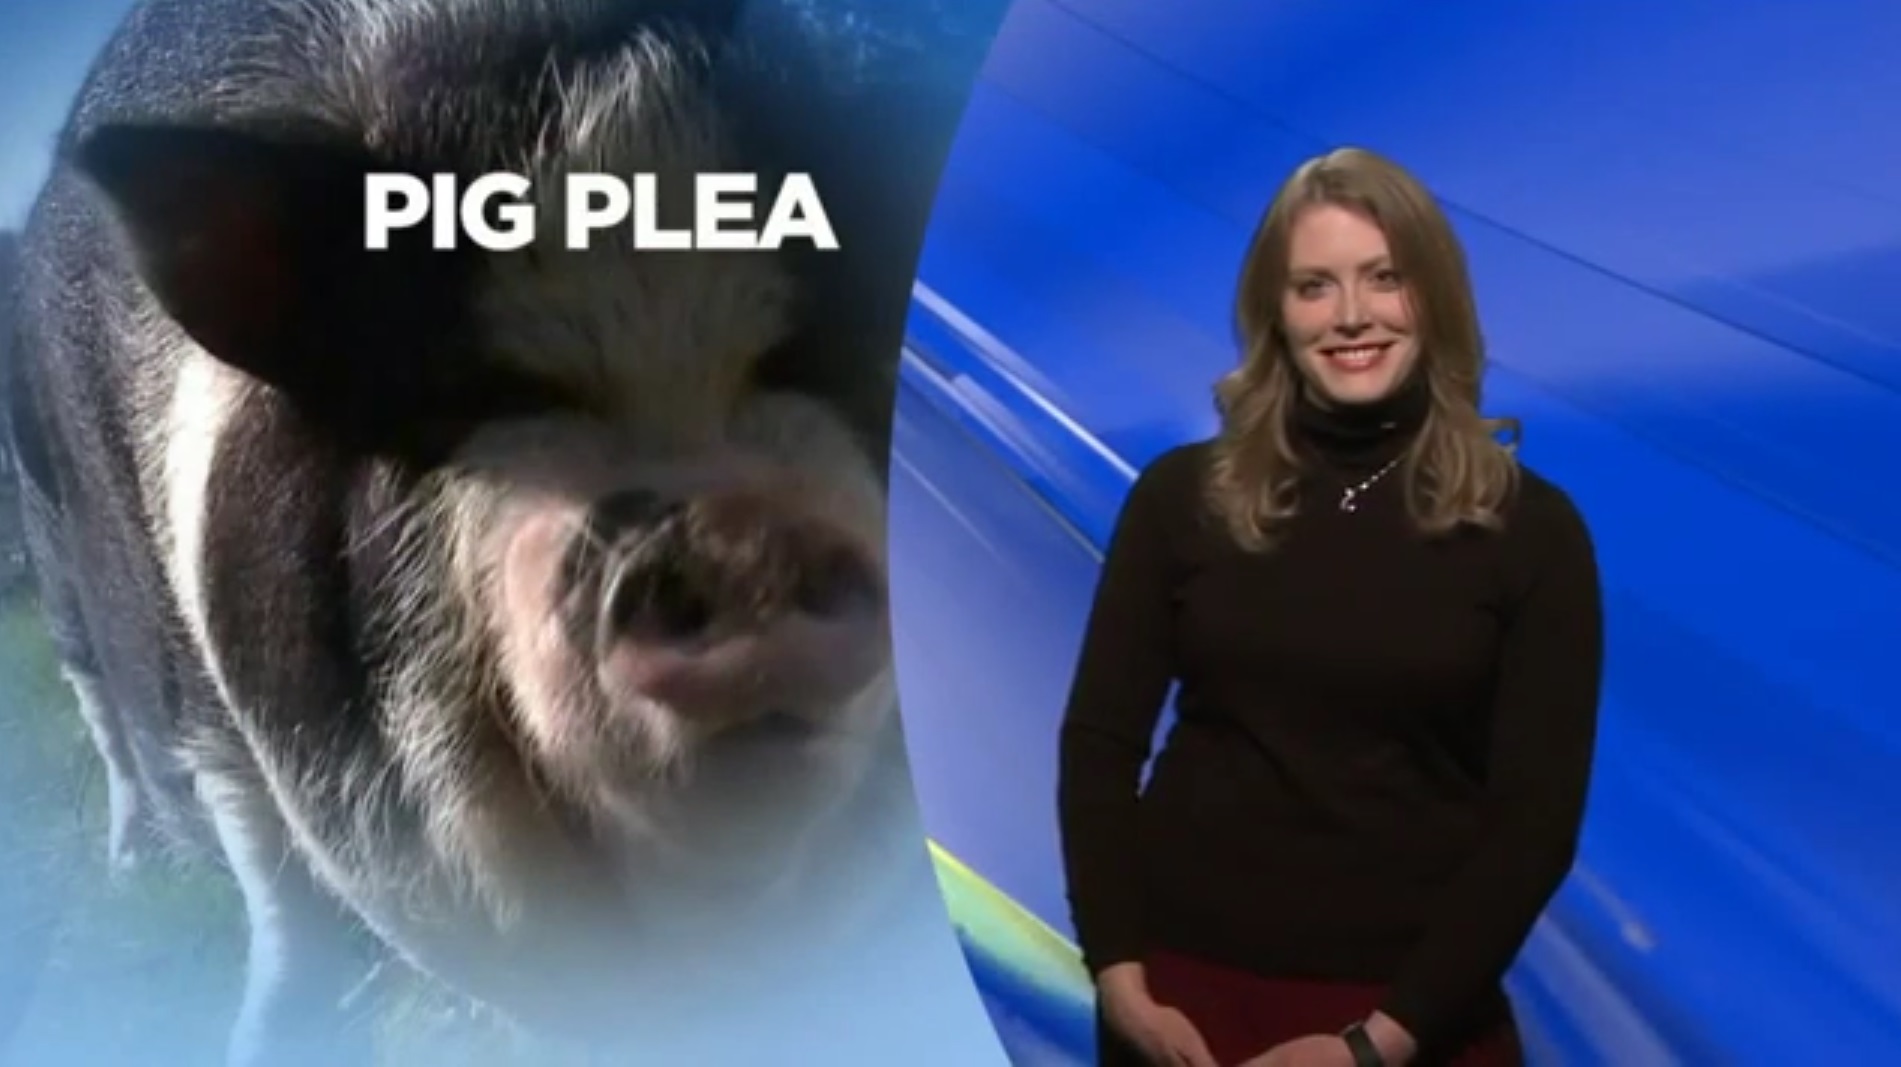 Pig Plea